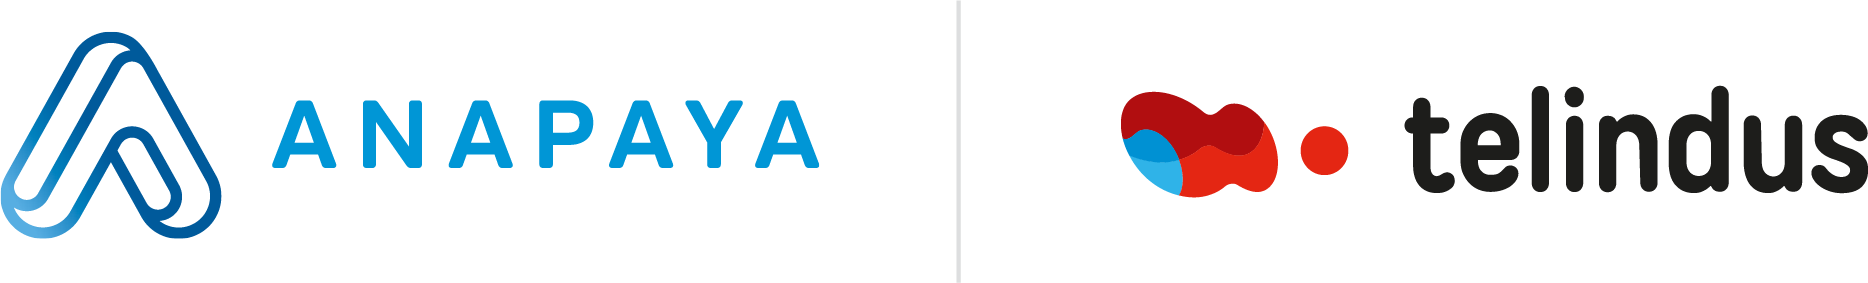 Anapaya and Telindus logos